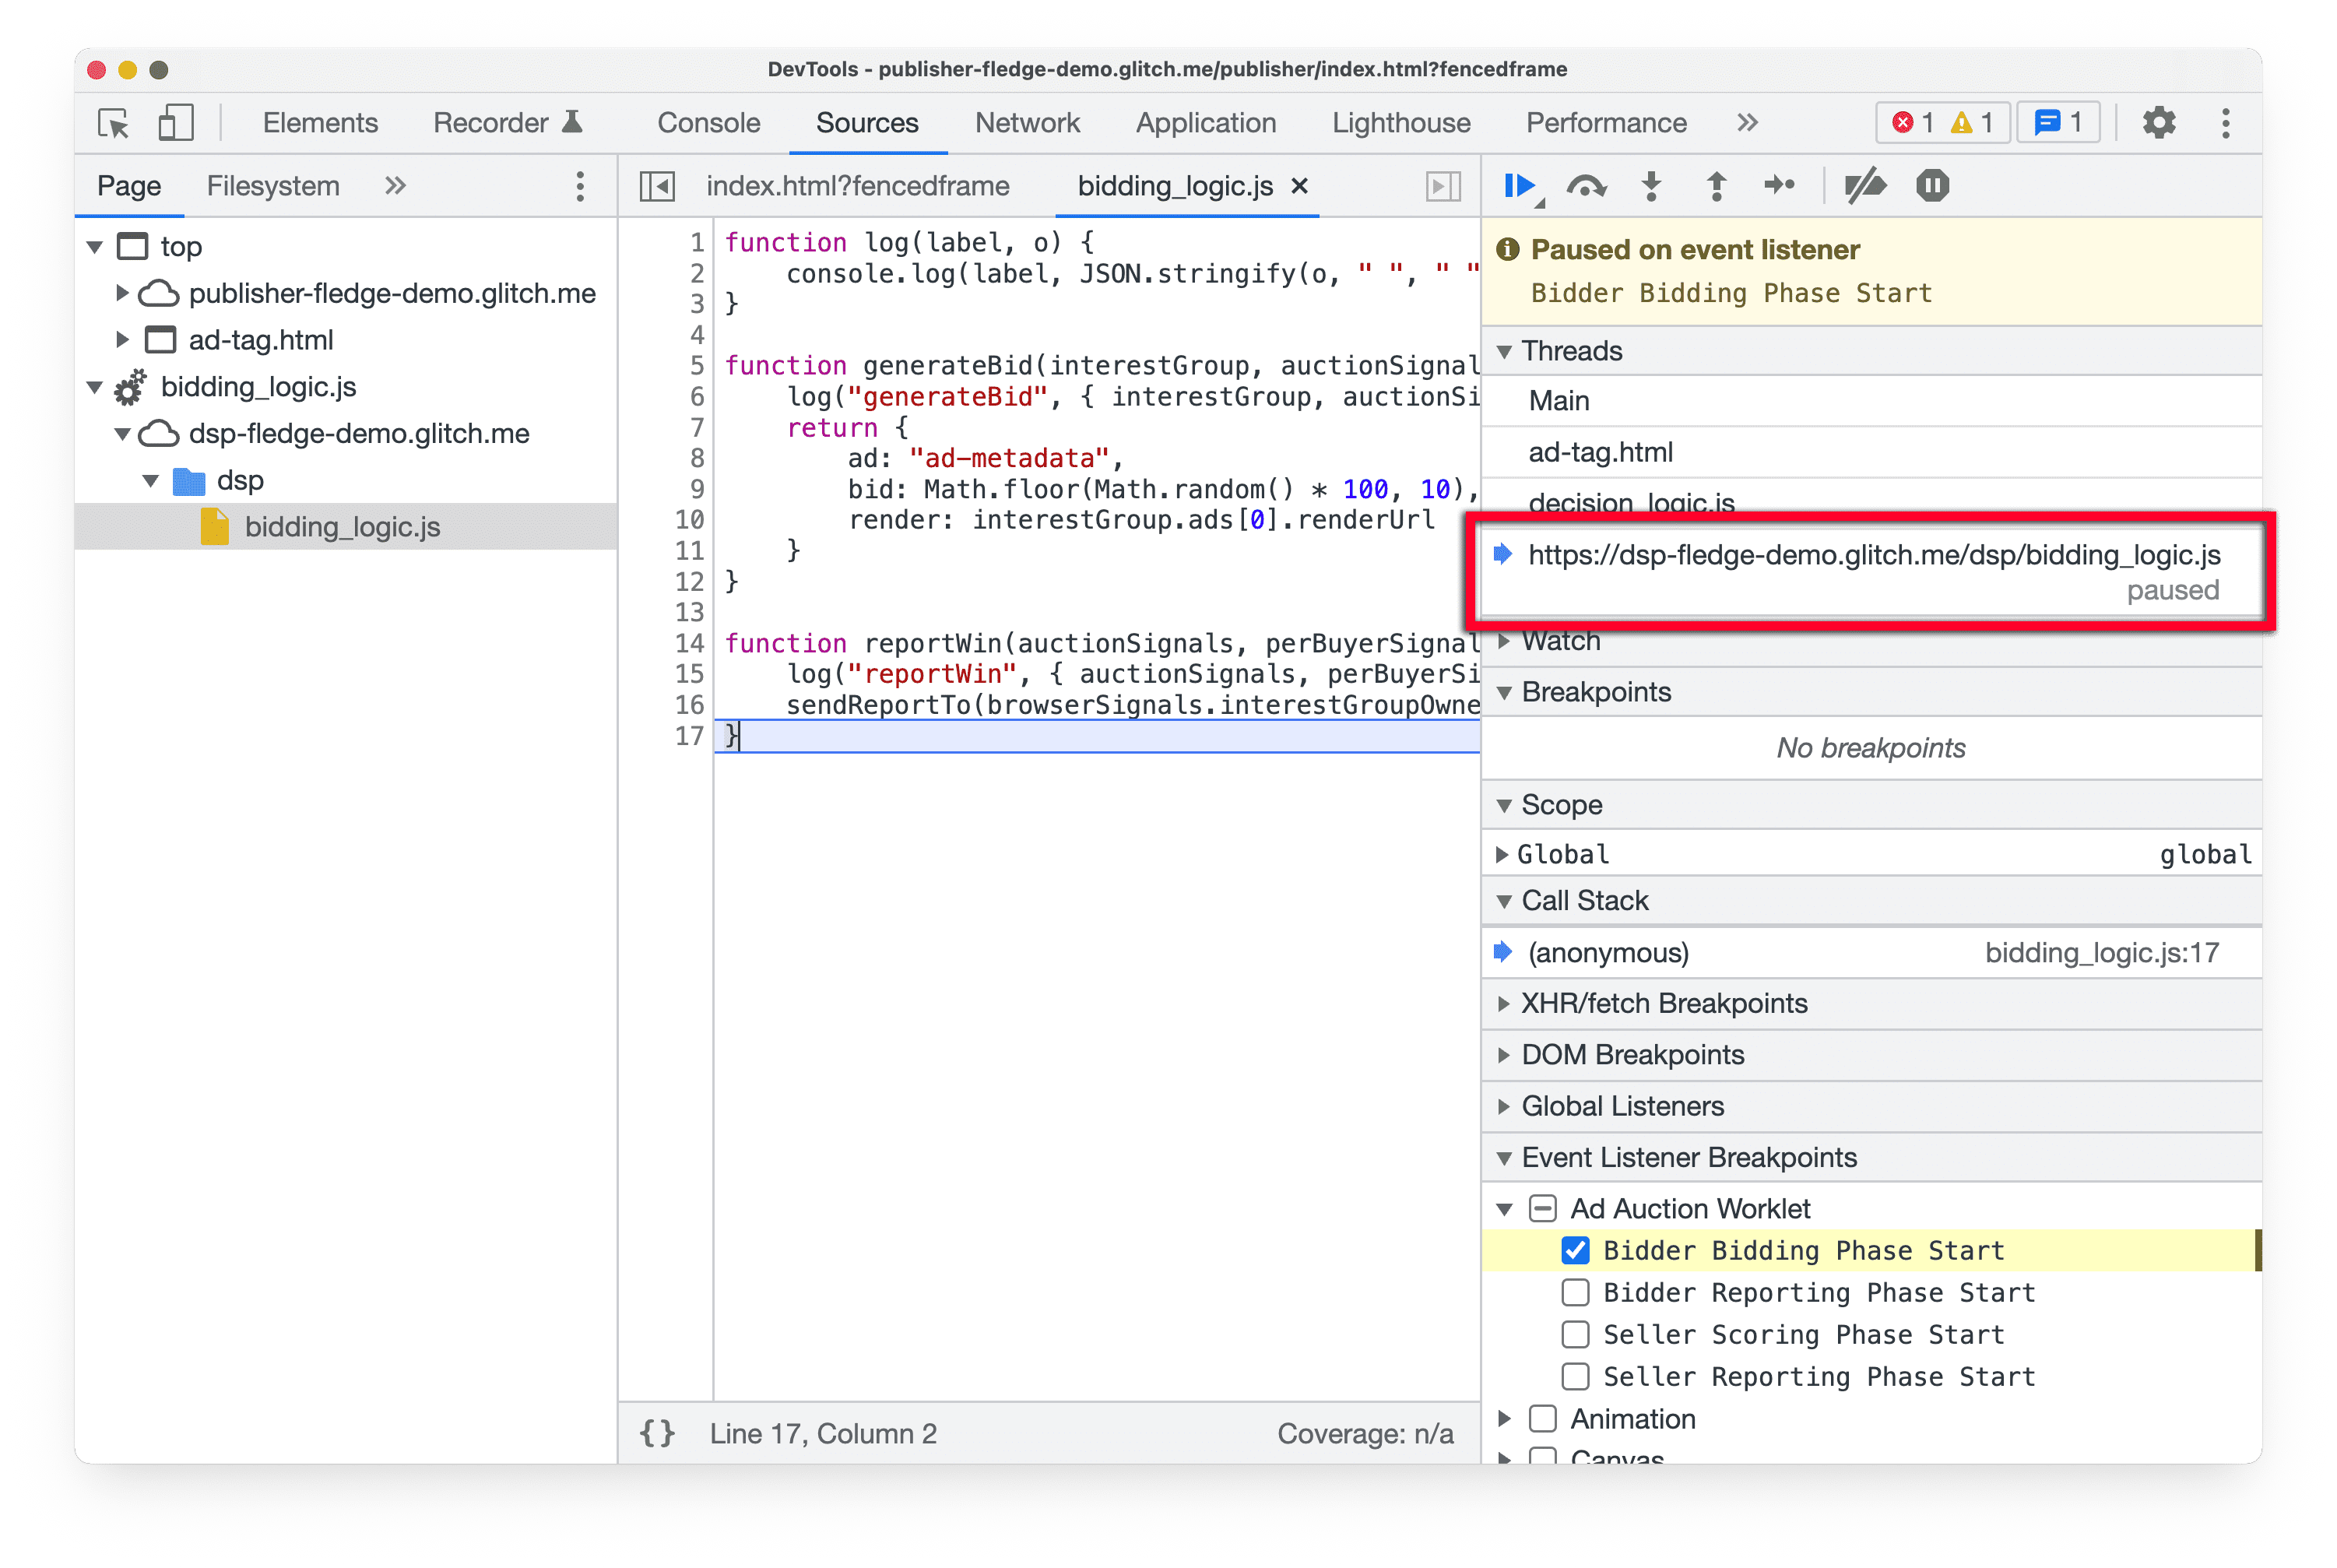 Captura de tela do
DevTools no Chrome Canary, que destaca o painel &quot;Threads&quot; no painel Sources, mostrando o script
de worklet atual que foi pausado.